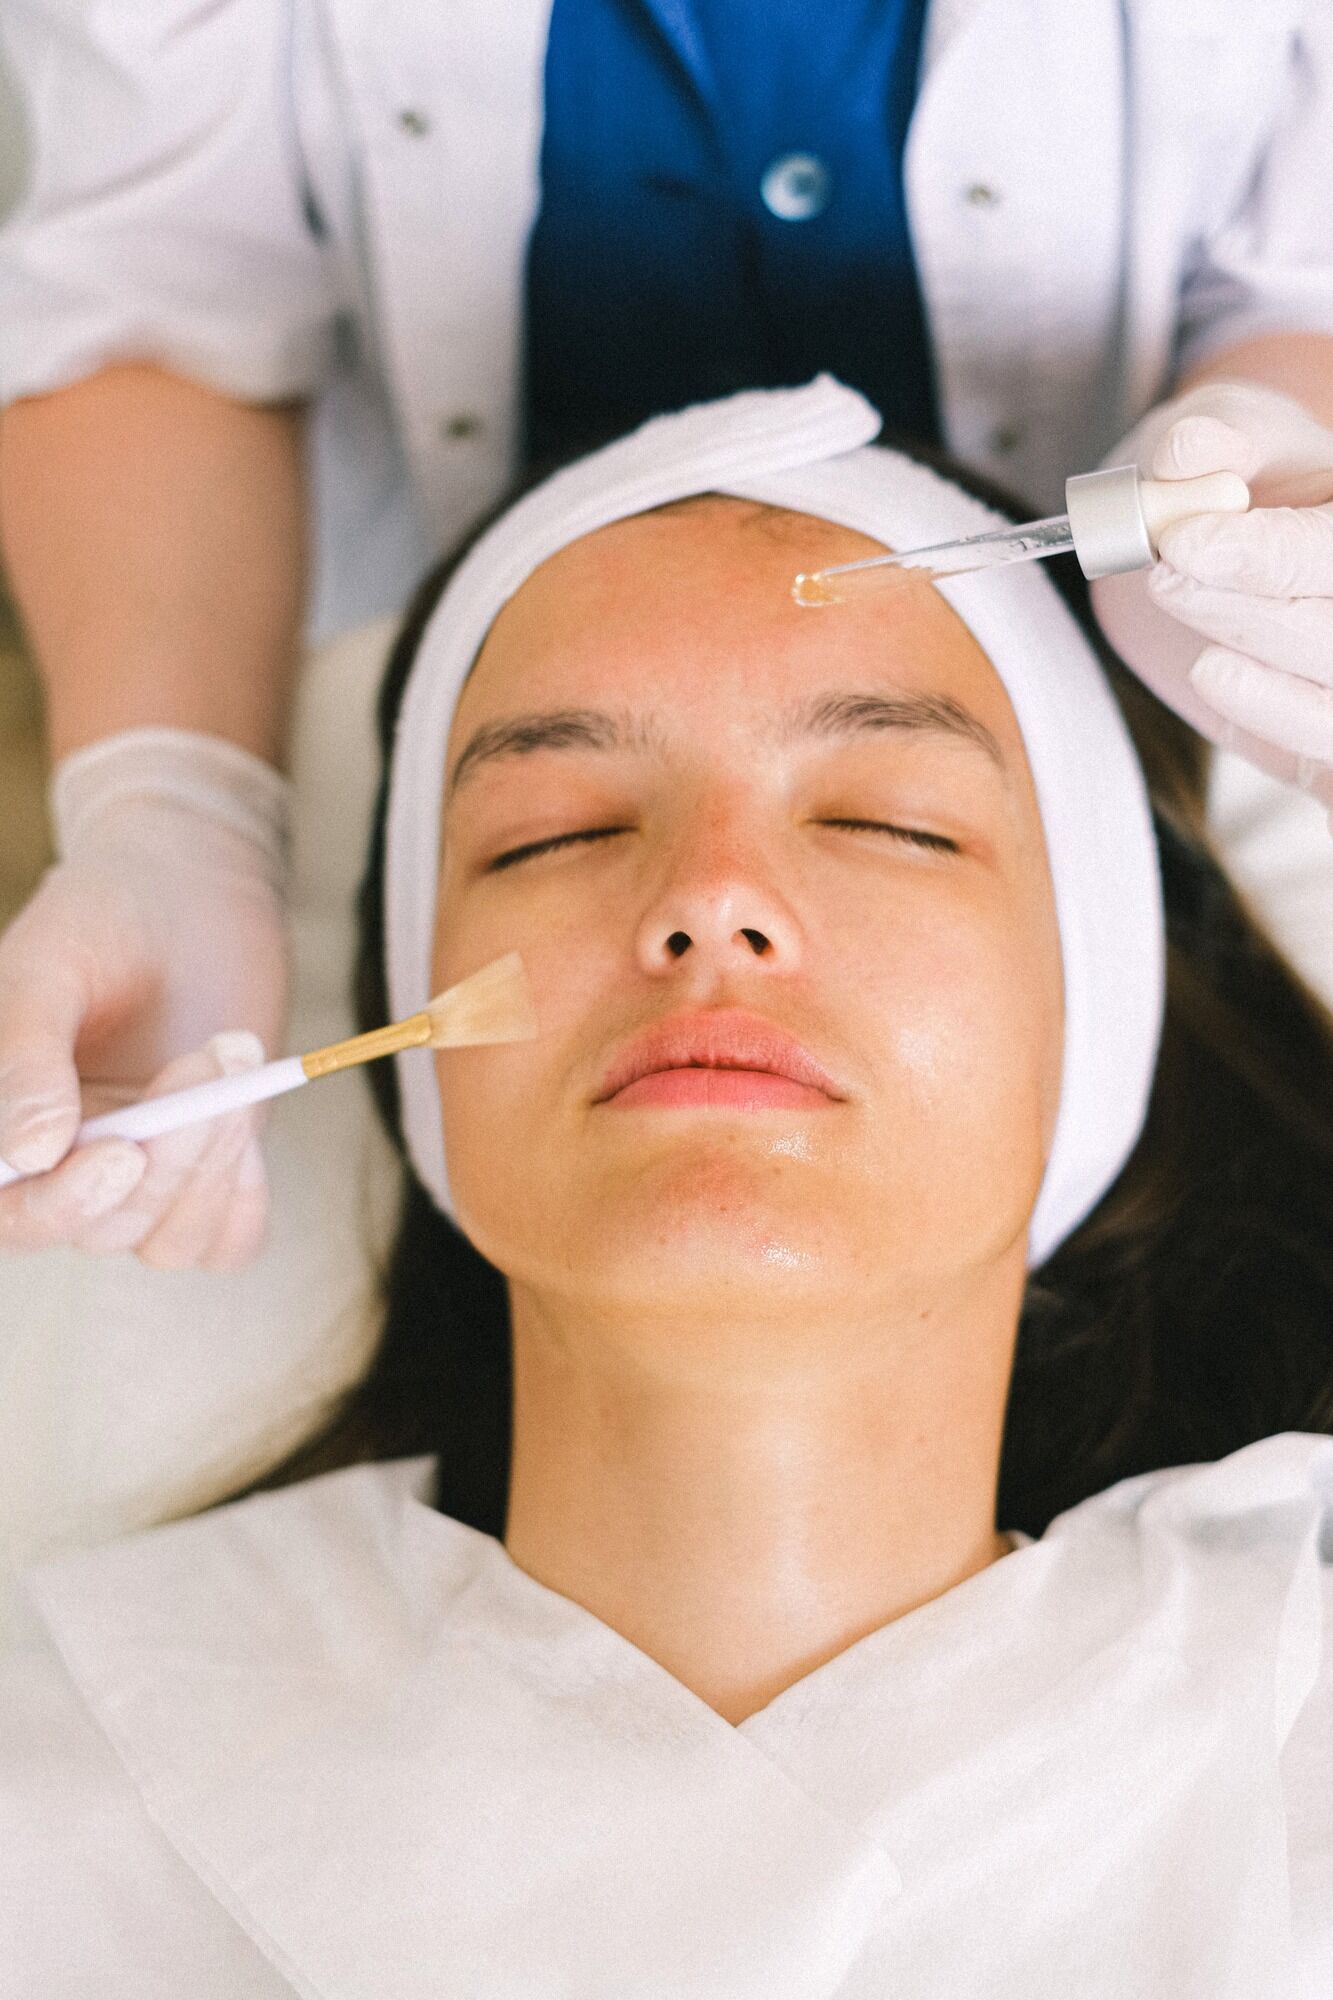 Пластичні хірурги назвали дорогі косметологічні процедури, які не варто робити: вони шкідливі або не дають результату